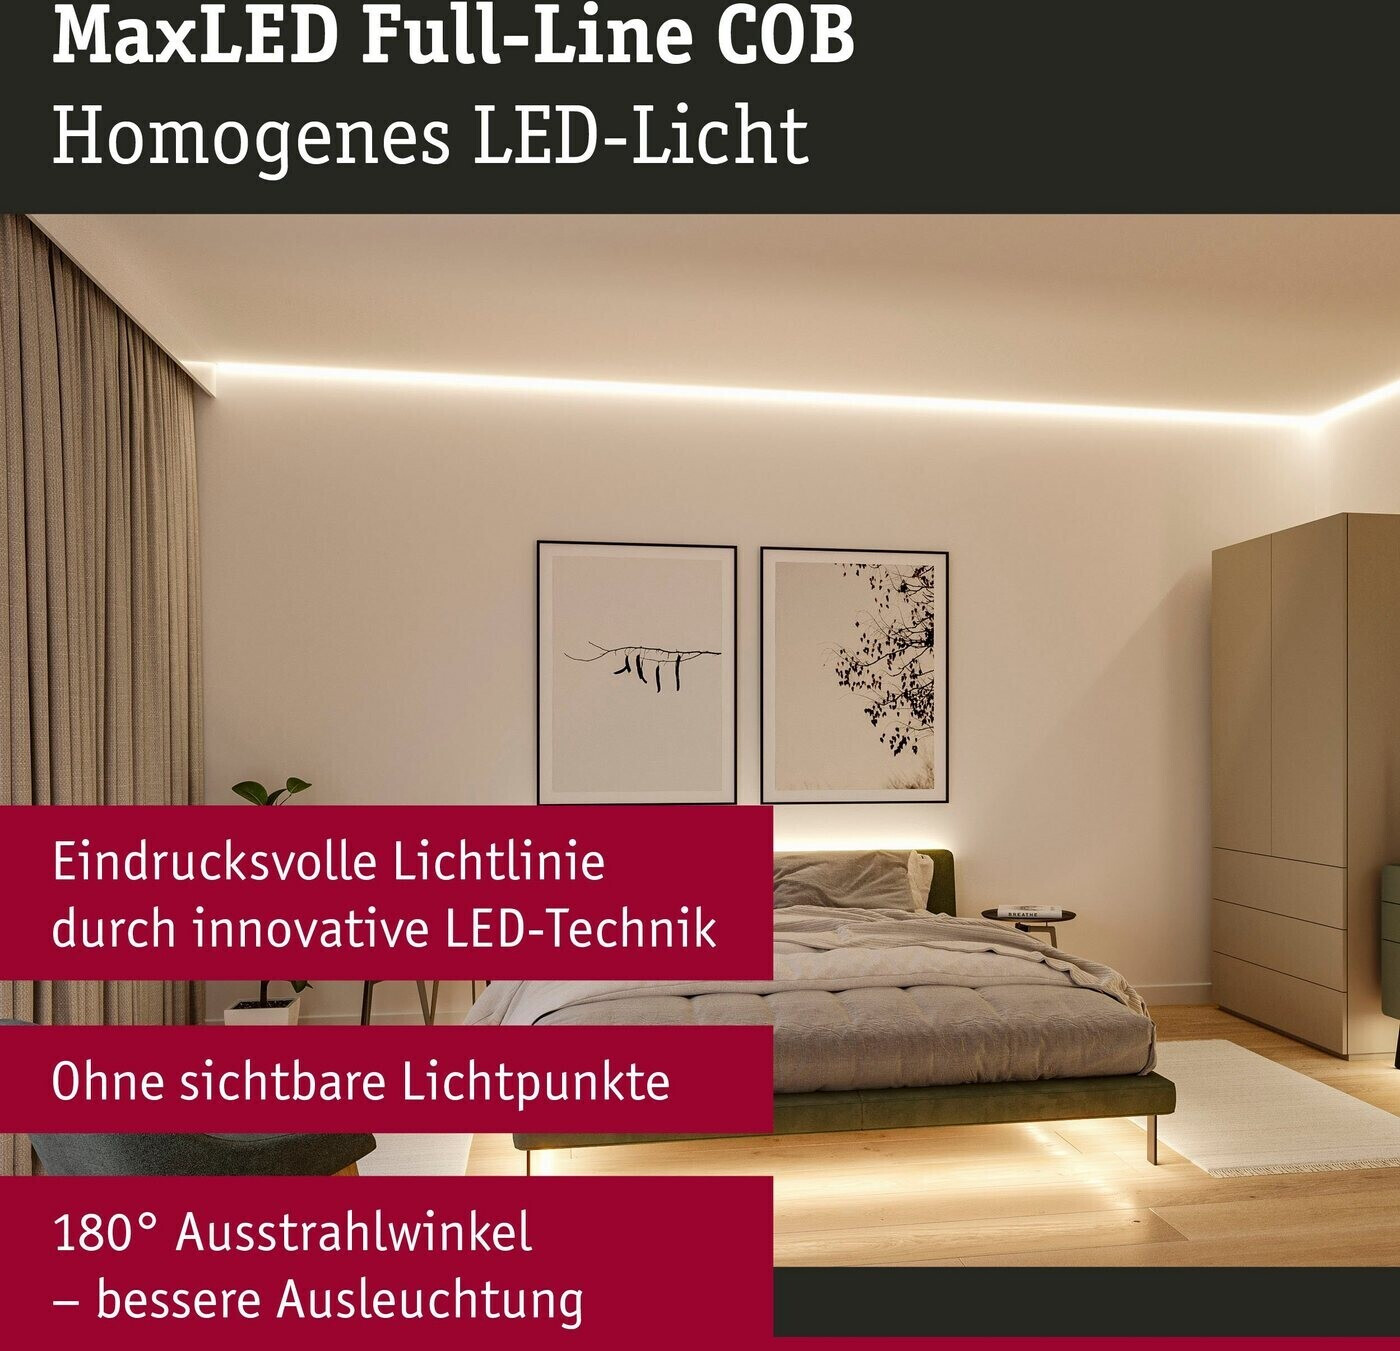 56,51 Full-Line COB MaxLED (71049) LED Preisvergleich € bei Basisset Paulmann Stripe 3m ab 1000 |